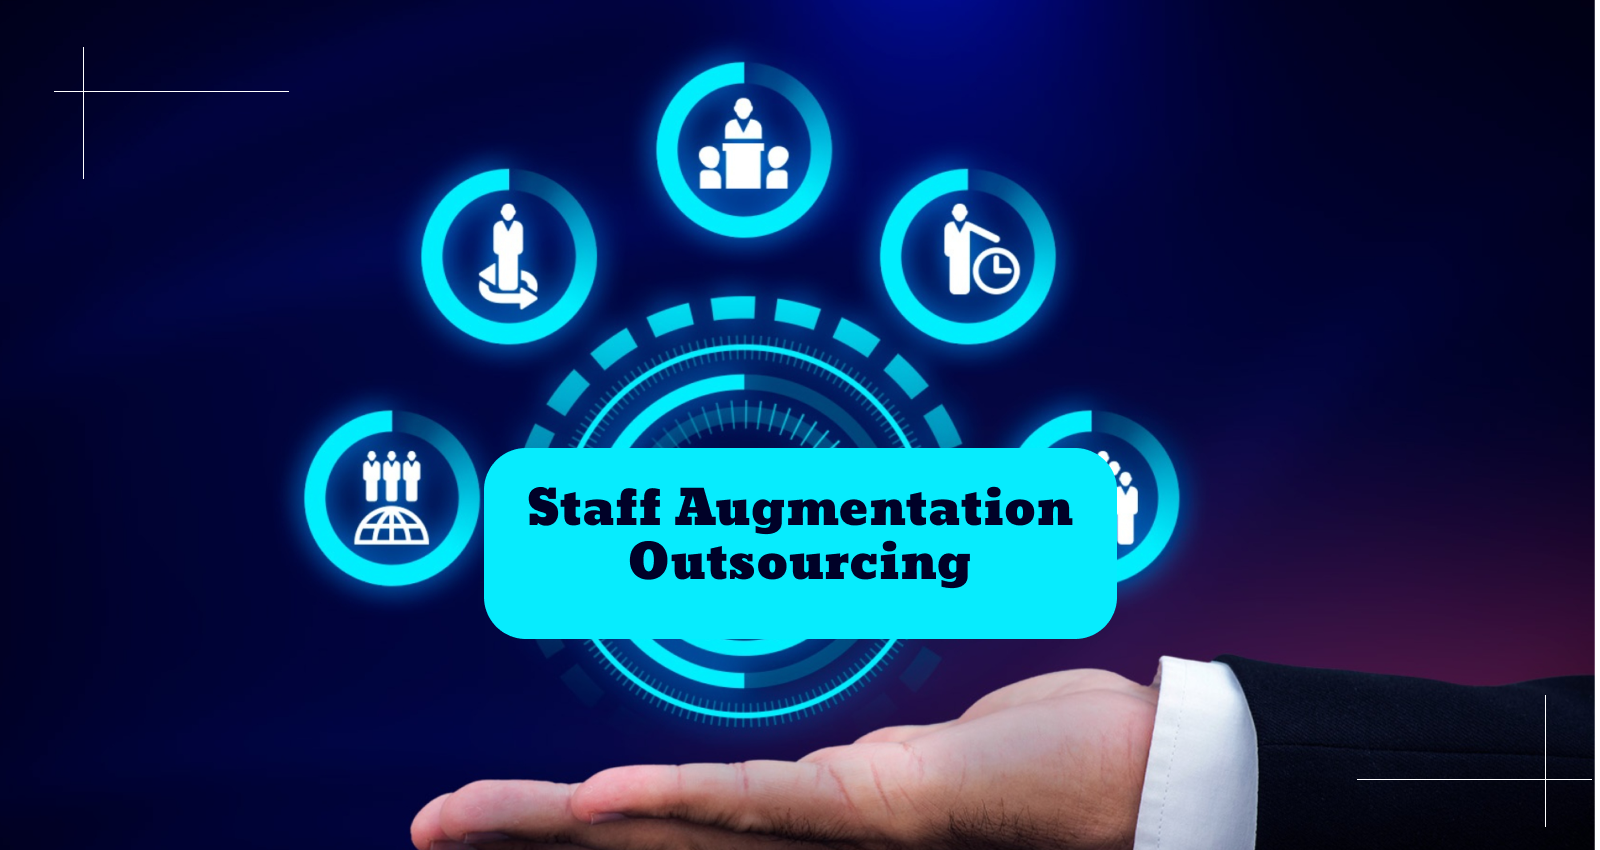 Outsourcing, IT Outsourcing, IT Staffing, IT Staff Augmentation, IT Staff Augmentation Outsourcing, Staff Augmentation, Staff Augmentation Outsourcing